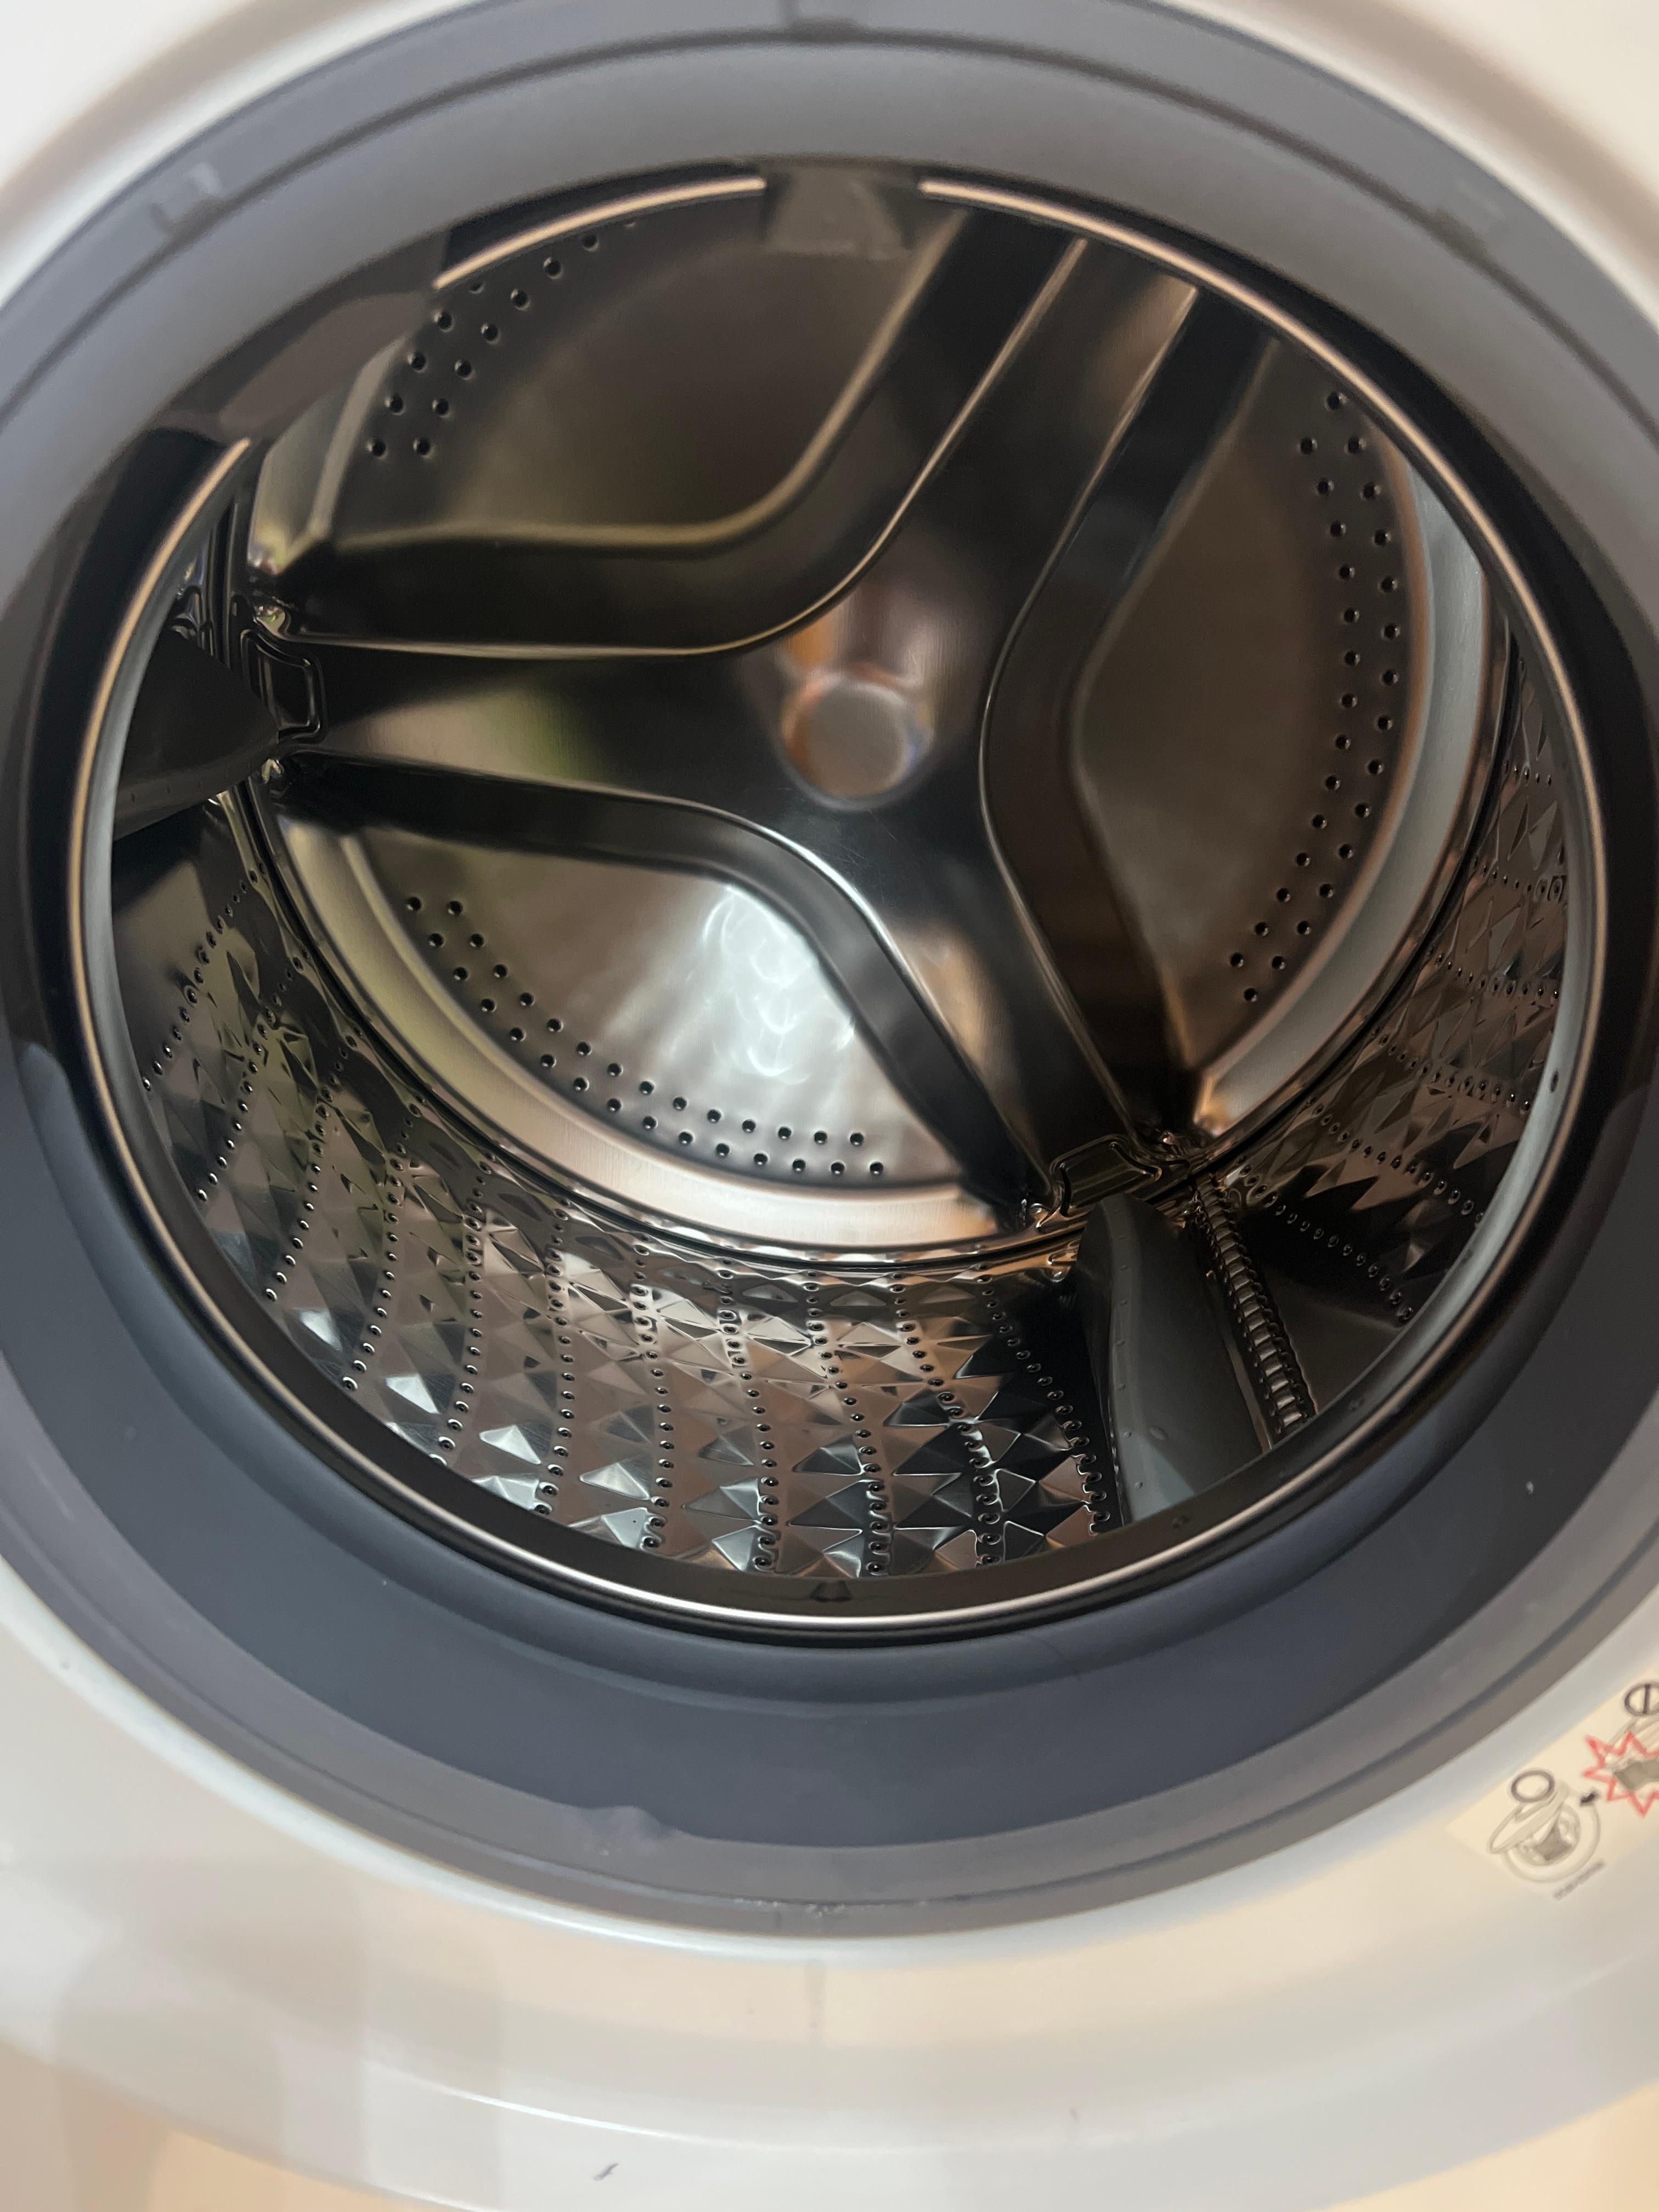 Guarnizione lavatrice deformata - Samsung Community